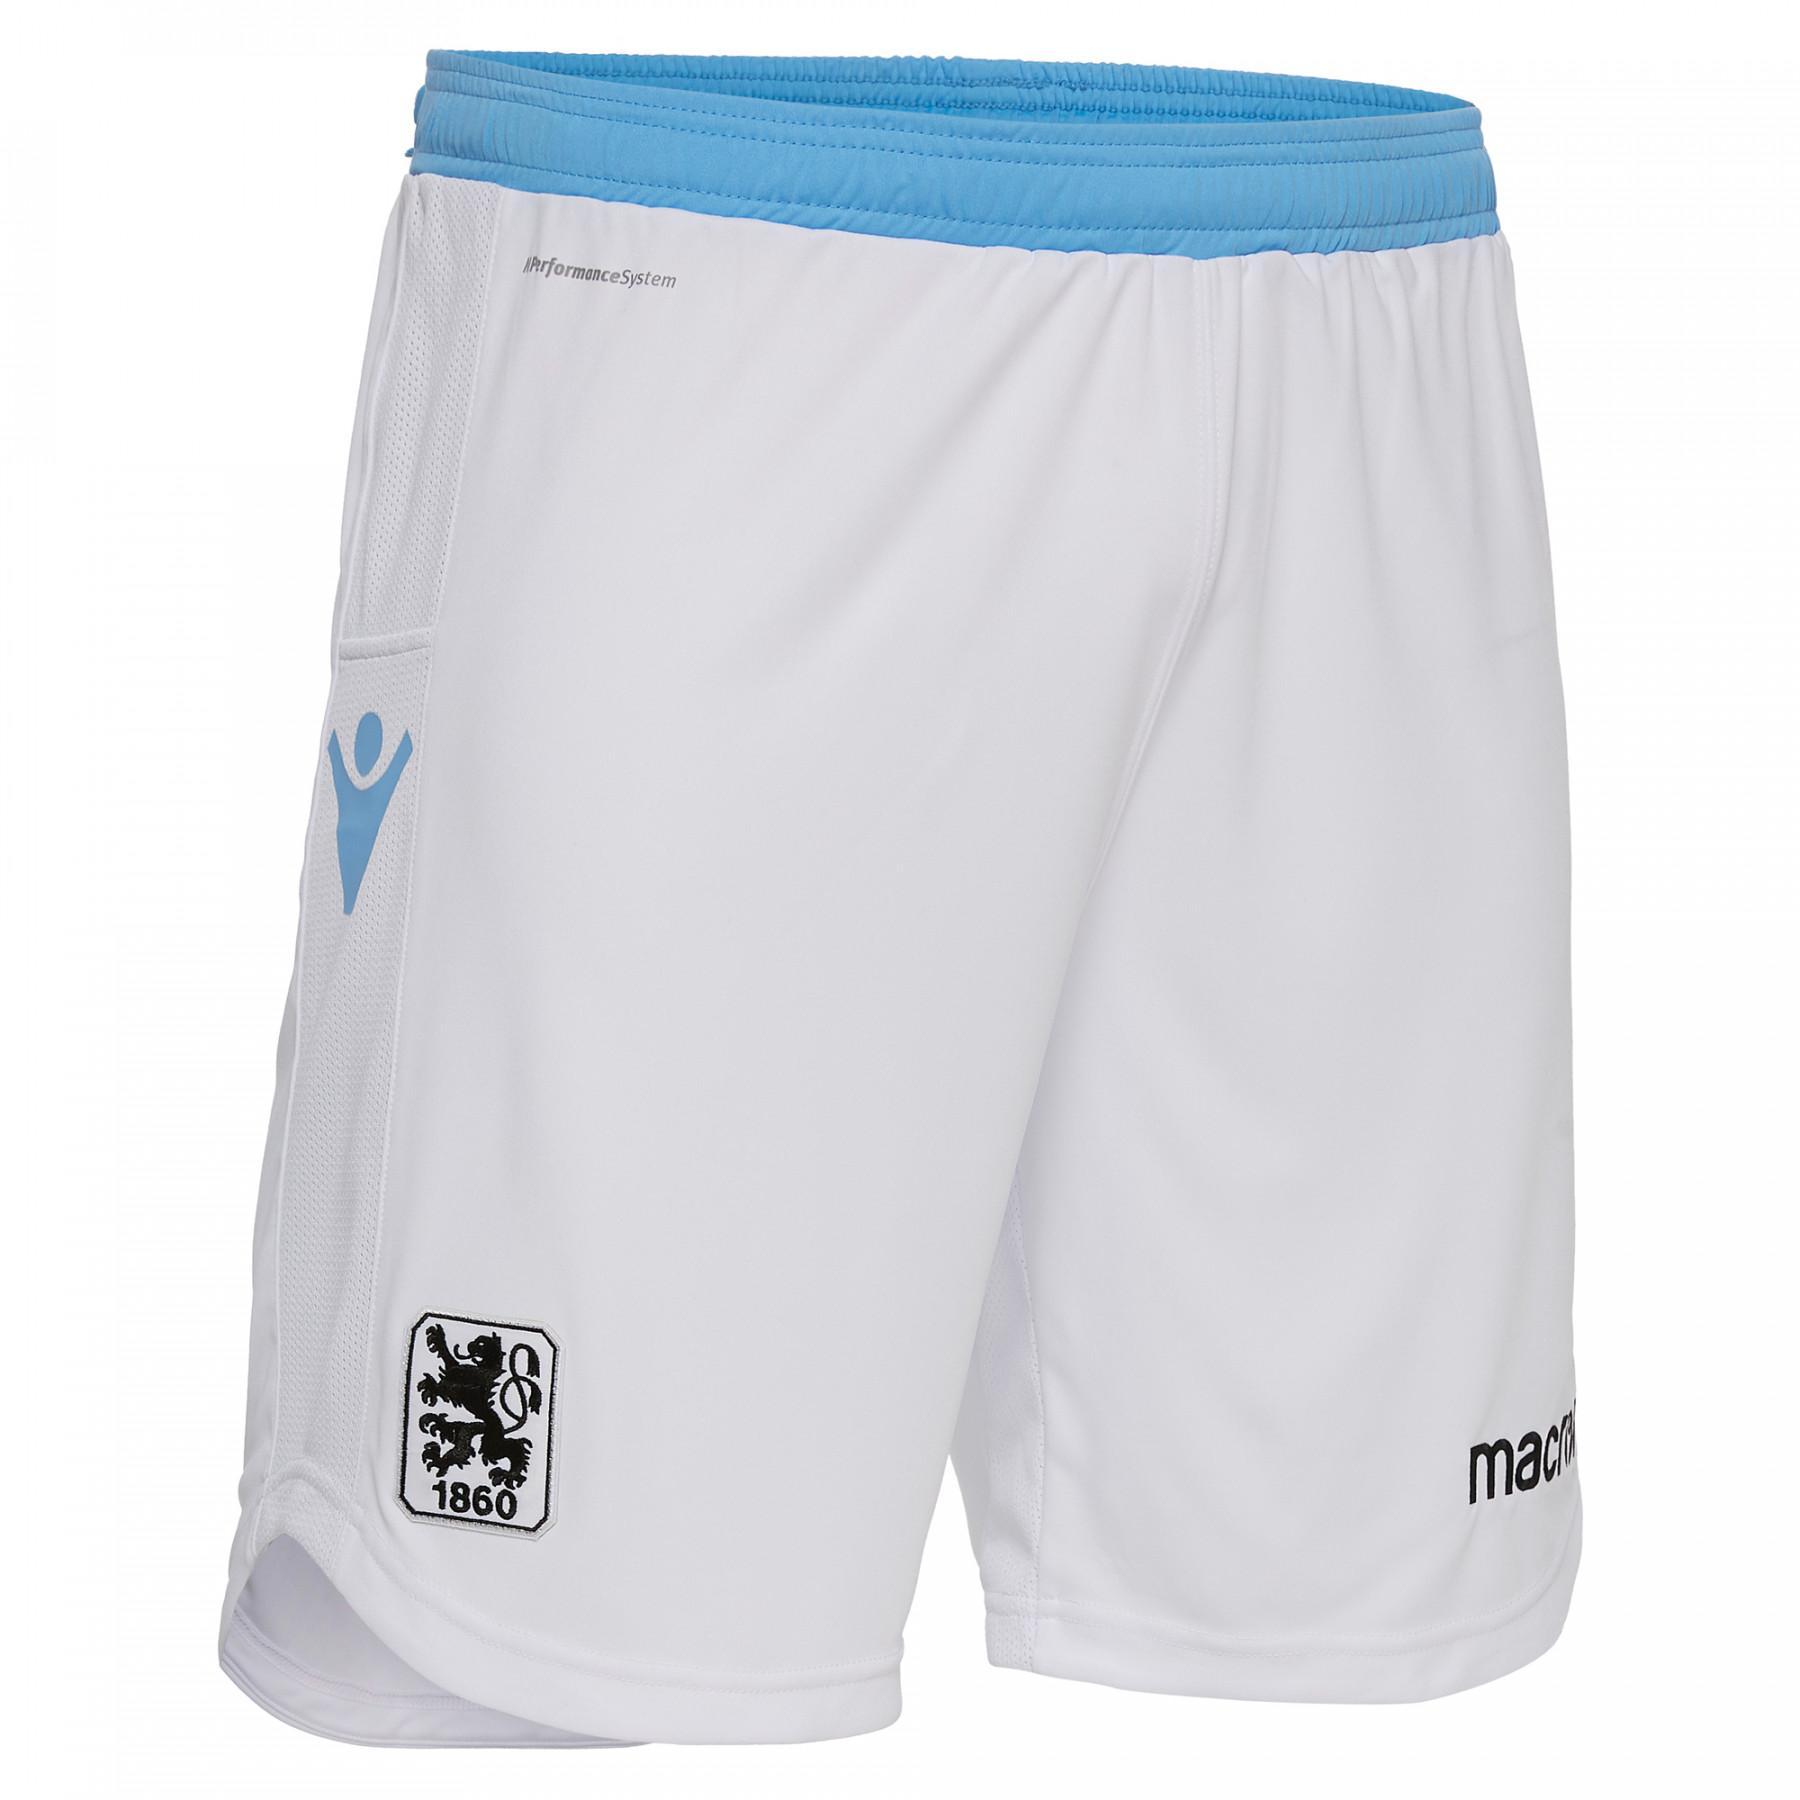 Pantalones cortos para el hogar Munich 1860 2018/19